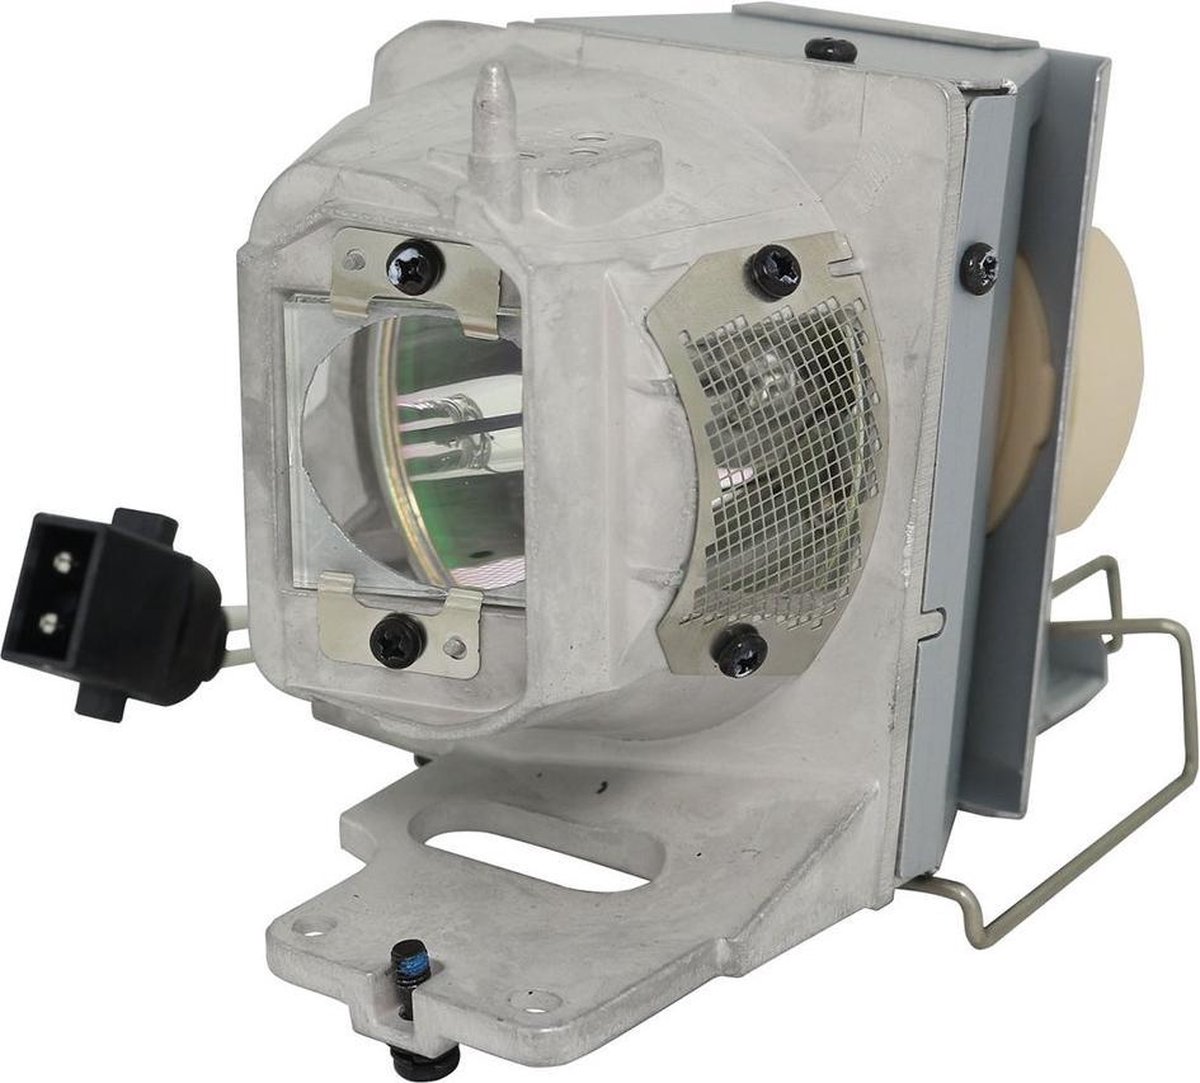 Beamerlamp geschikt voor de OPTOMA UHD550X beamer, lamp code BL-FP240E / SP.78V01GC01. Bevat originele UHP lamp, prestaties gelijk aan origineel.